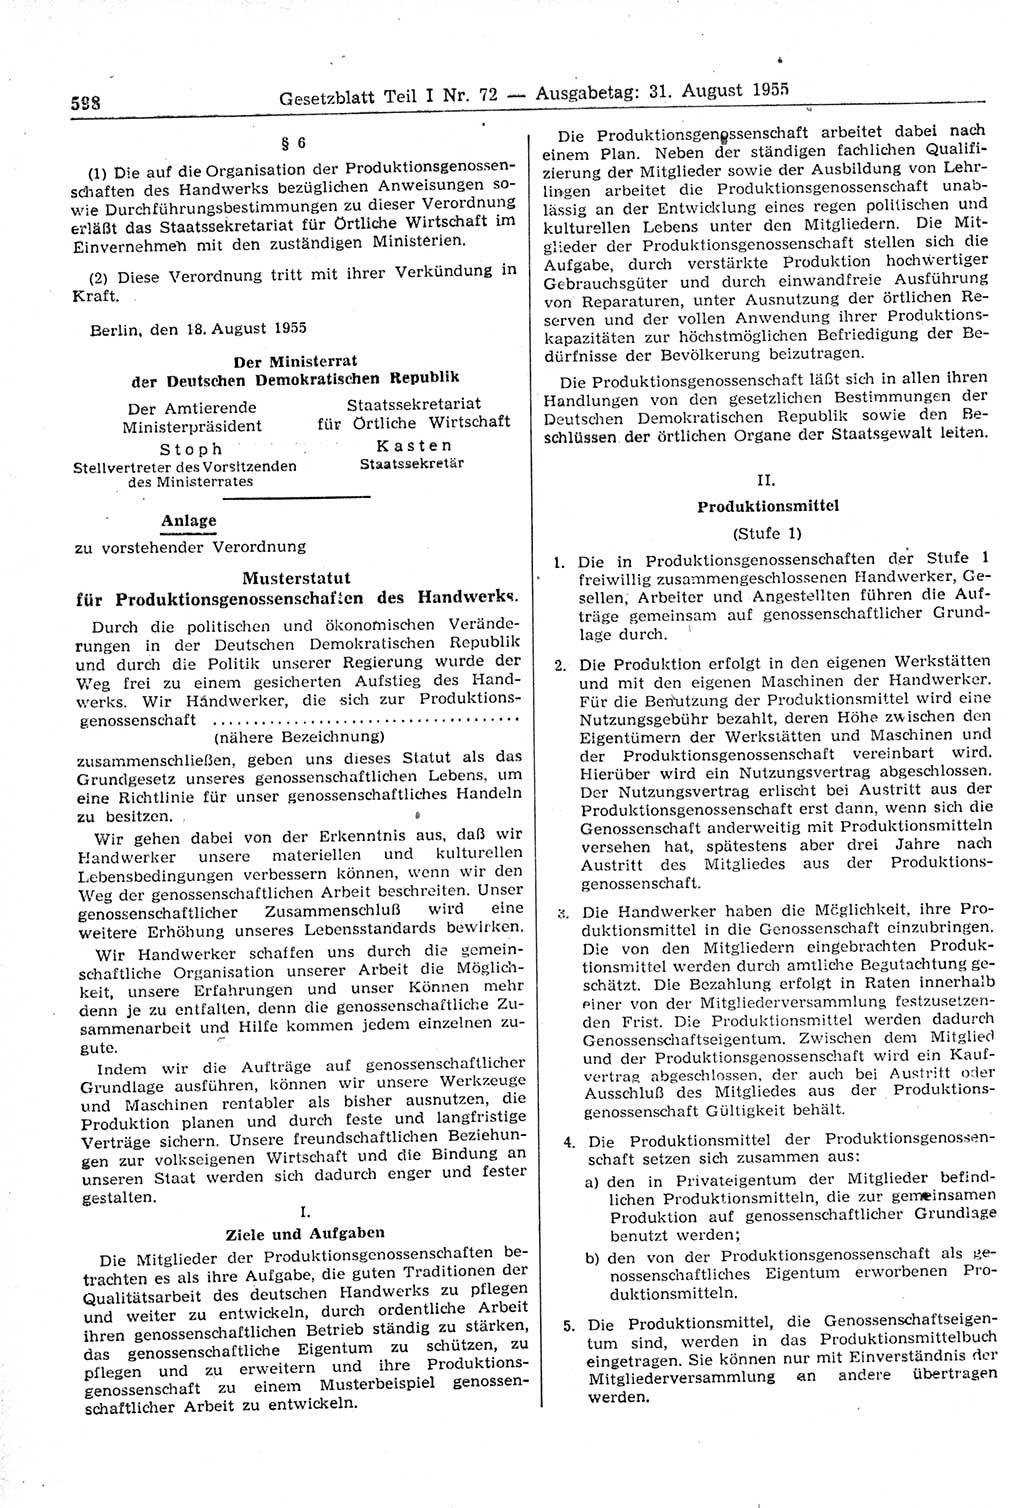 Gesetzblatt (GBl.) der Deutschen Demokratischen Republik (DDR) Teil Ⅰ 1955, Seite 598 (GBl. DDR Ⅰ 1955, S. 598)